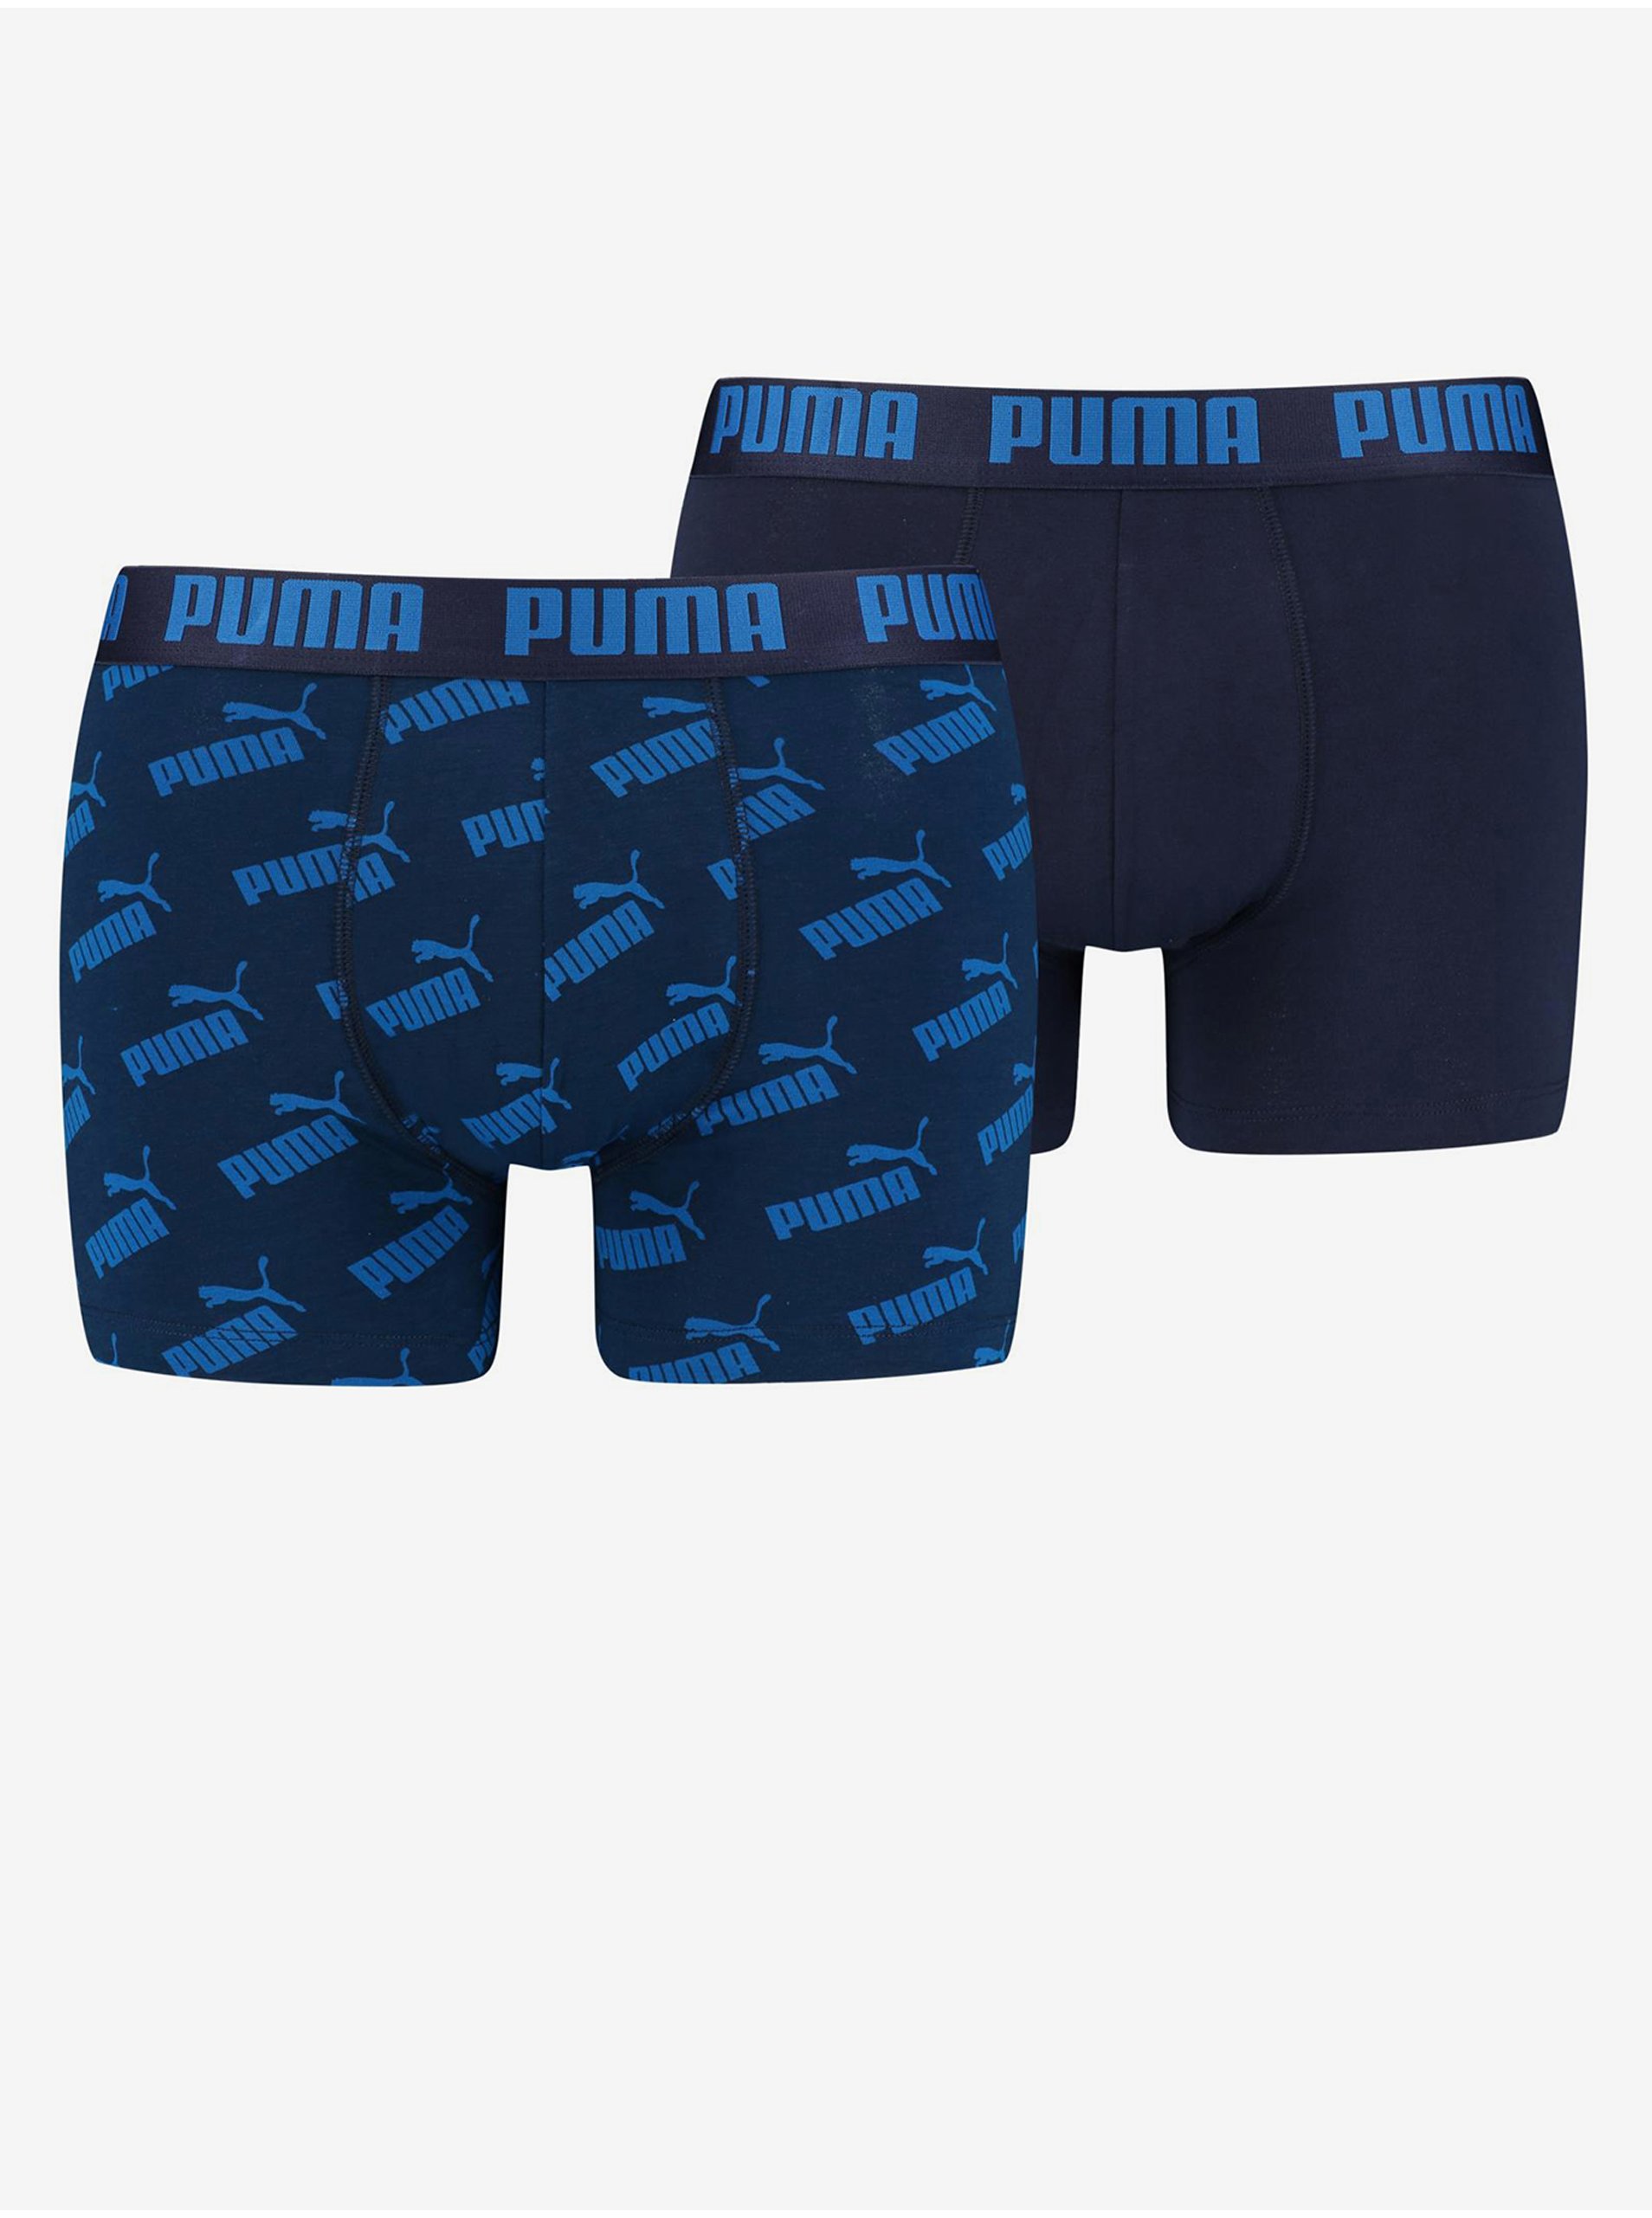 Levně Sada dvou párů pánských boxerek v tmavě modré barvě Puma